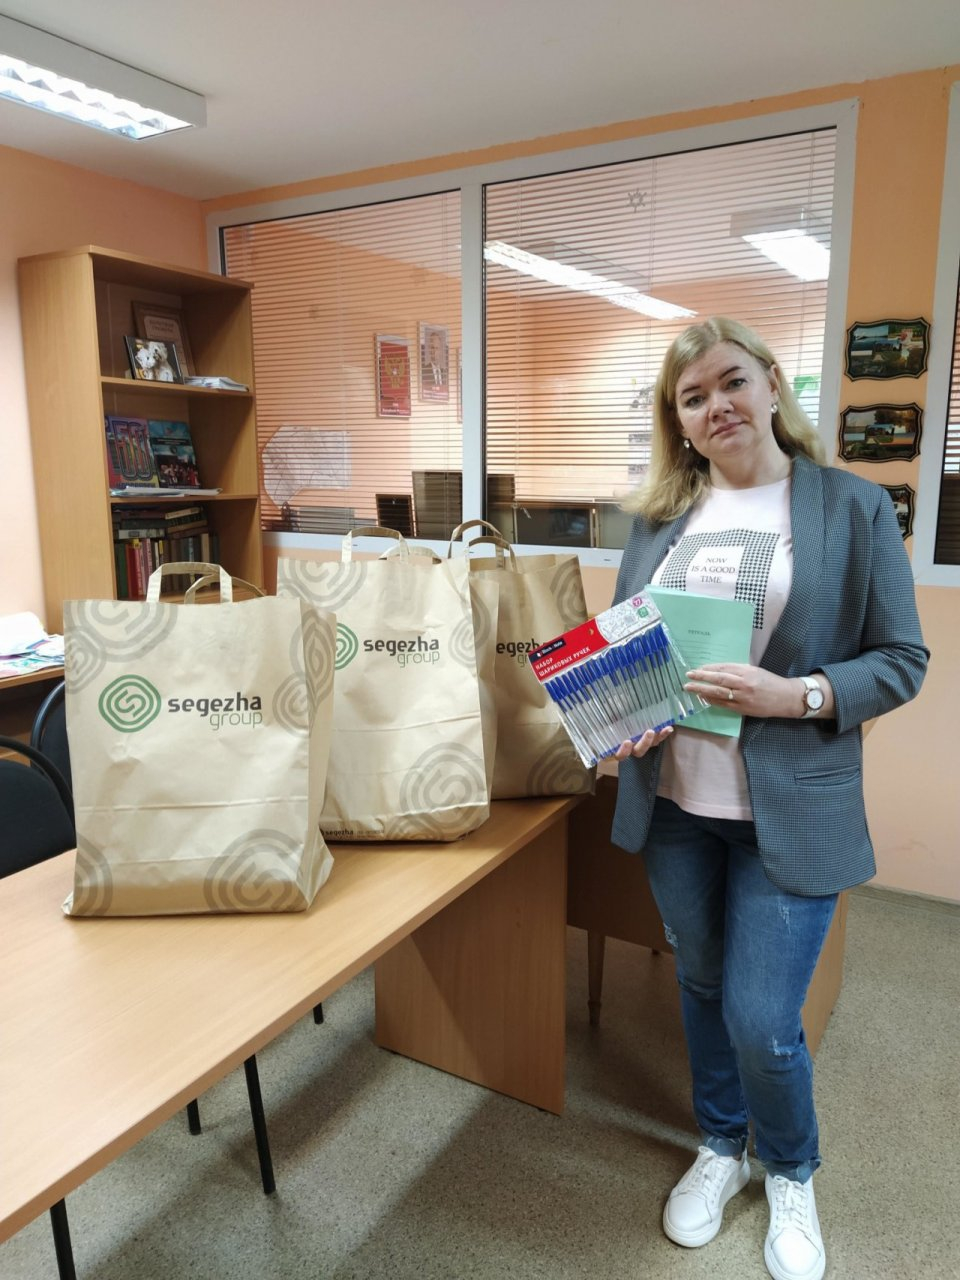 Более 200 наборов школьных принадлежностей переданы многодетным семьям сотрудников Segezha Group в Карелии и Кировской области